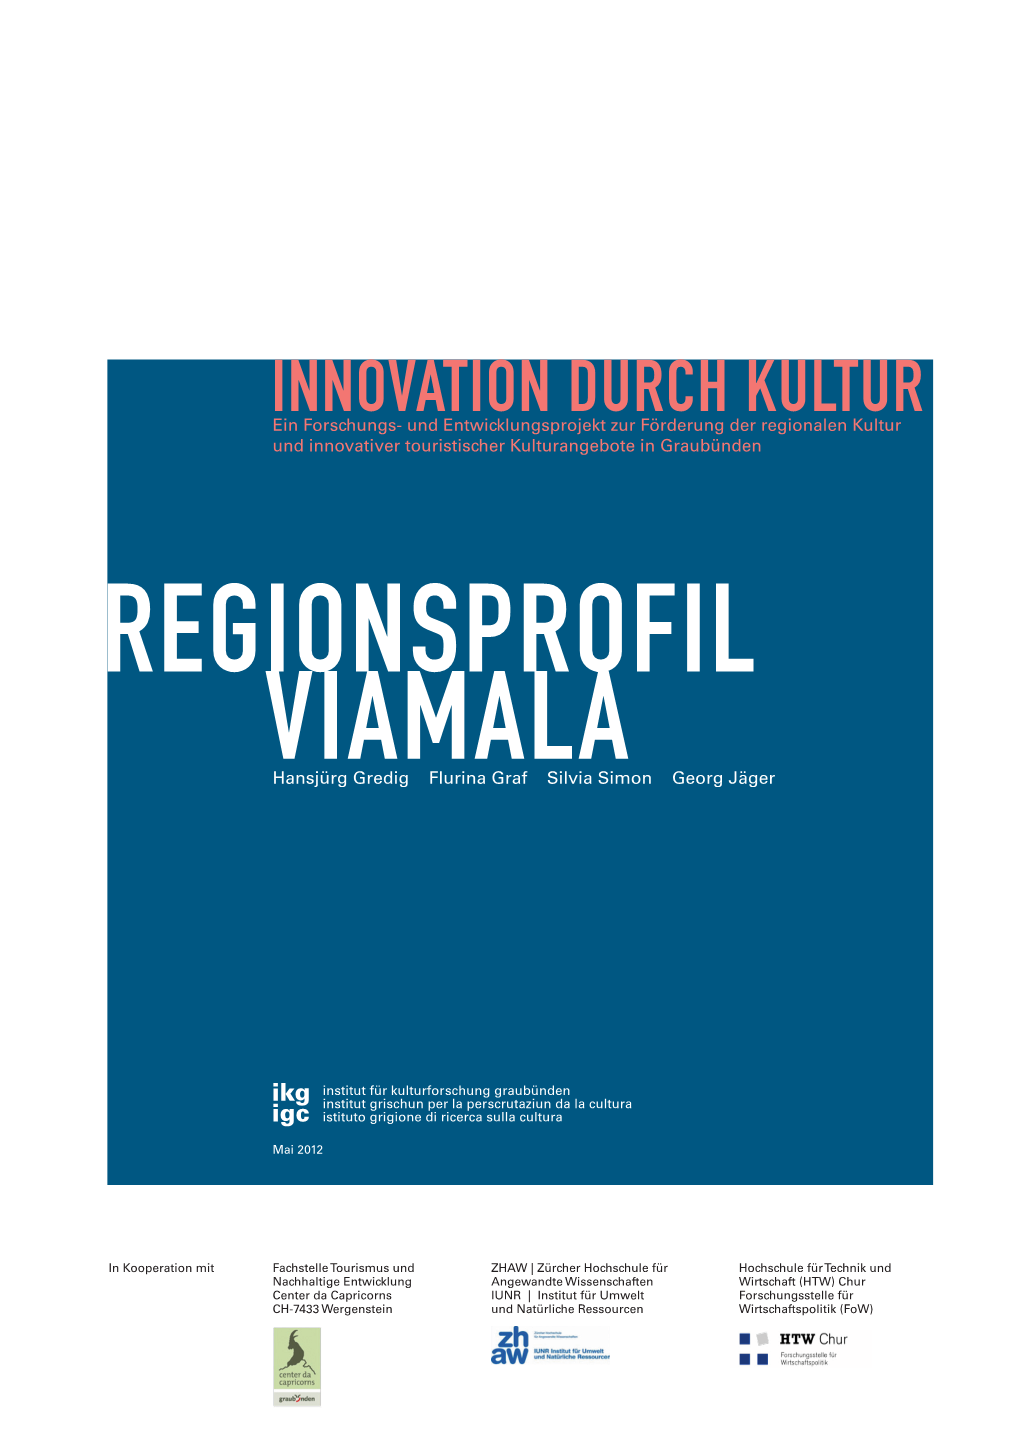 Regionsprofil Viamala. Innovation Durch Kultur